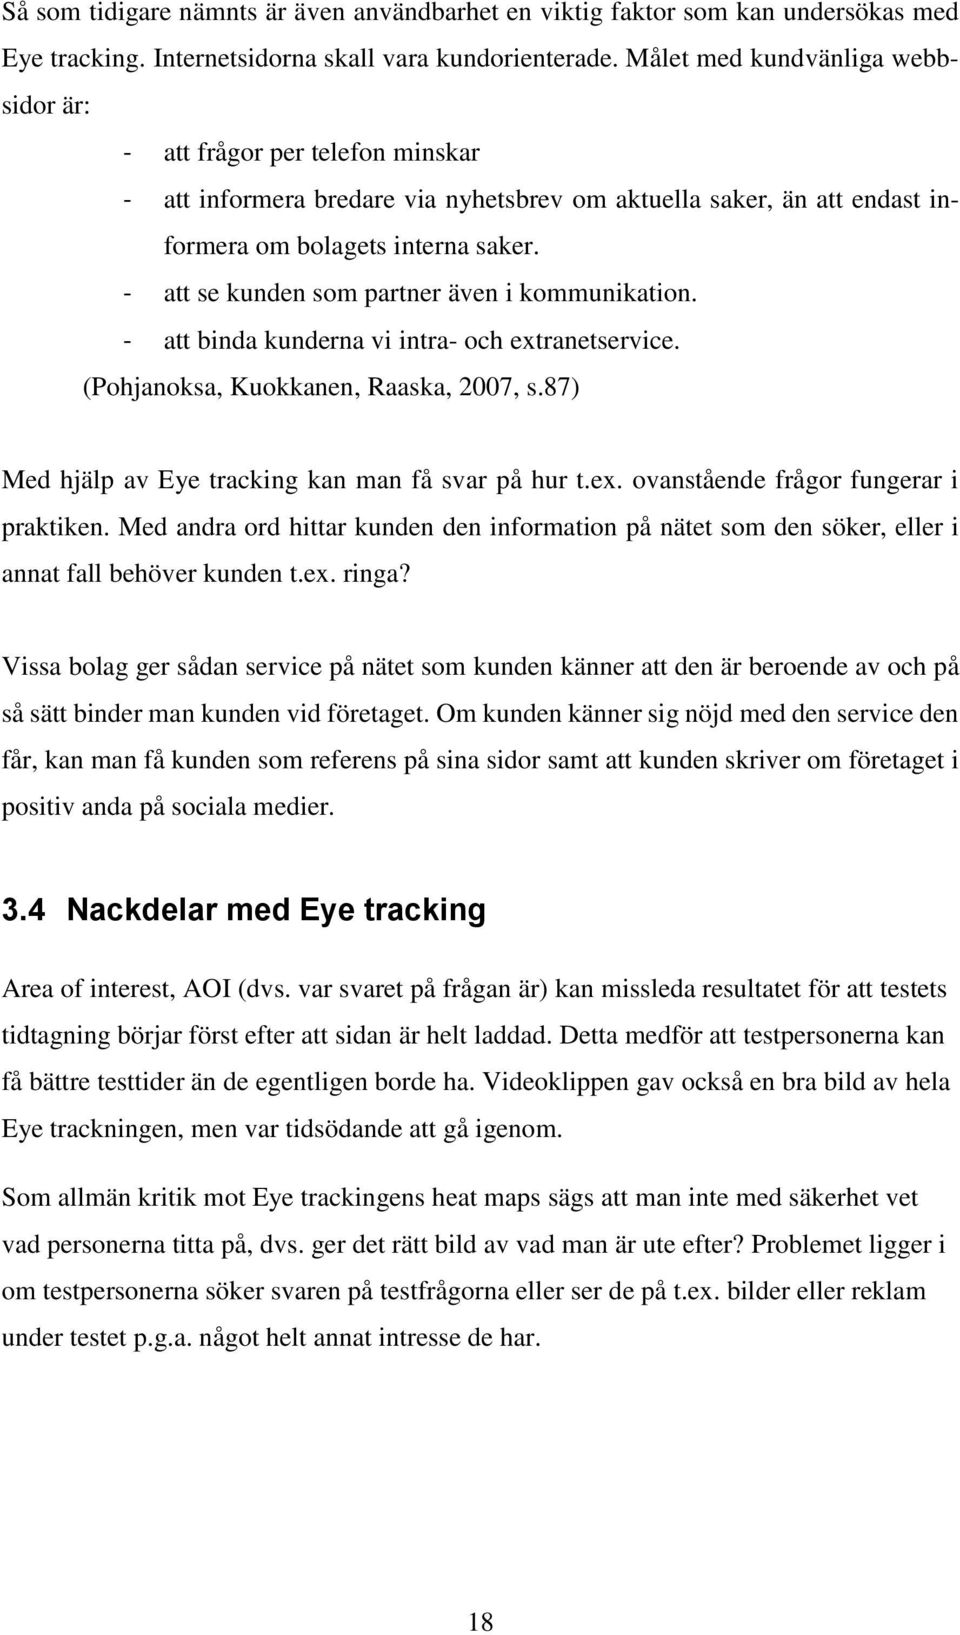 - att se kunden som partner även i kommunikation. - att binda kunderna vi intra- och extranetservice. (Pohjanoksa, Kuokkanen, Raaska, 2007, s.87) Med hjälp av Eye tracking kan man få svar på hur t.ex. ovanstående frågor fungerar i praktiken.